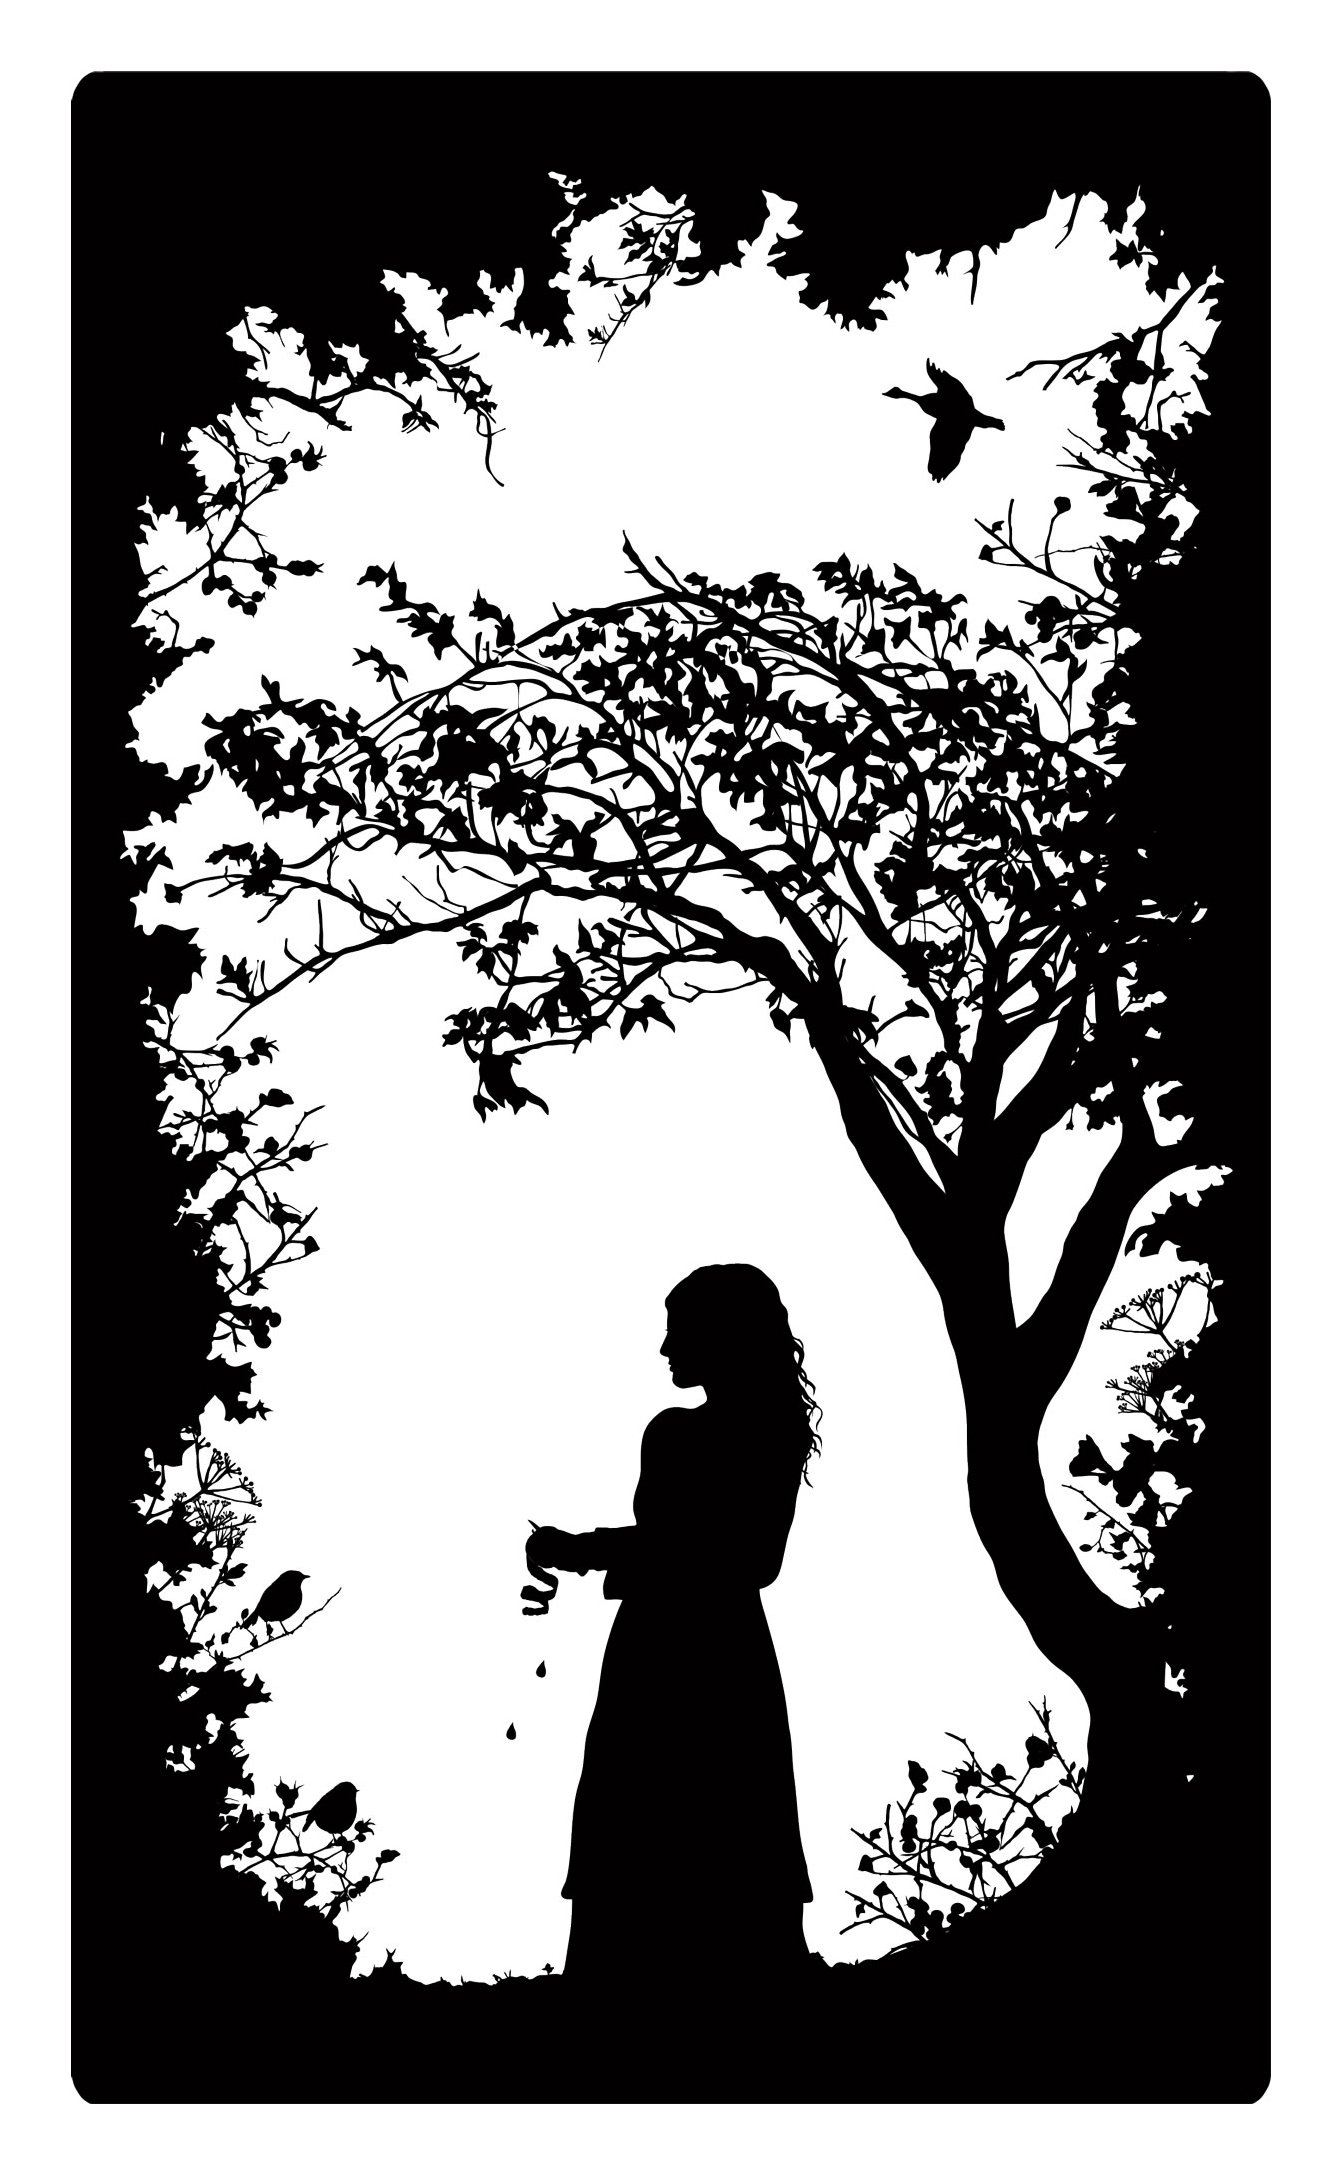 Laura-Barrett-Guardian-Great-Fairytales-juniper-tree.jpg